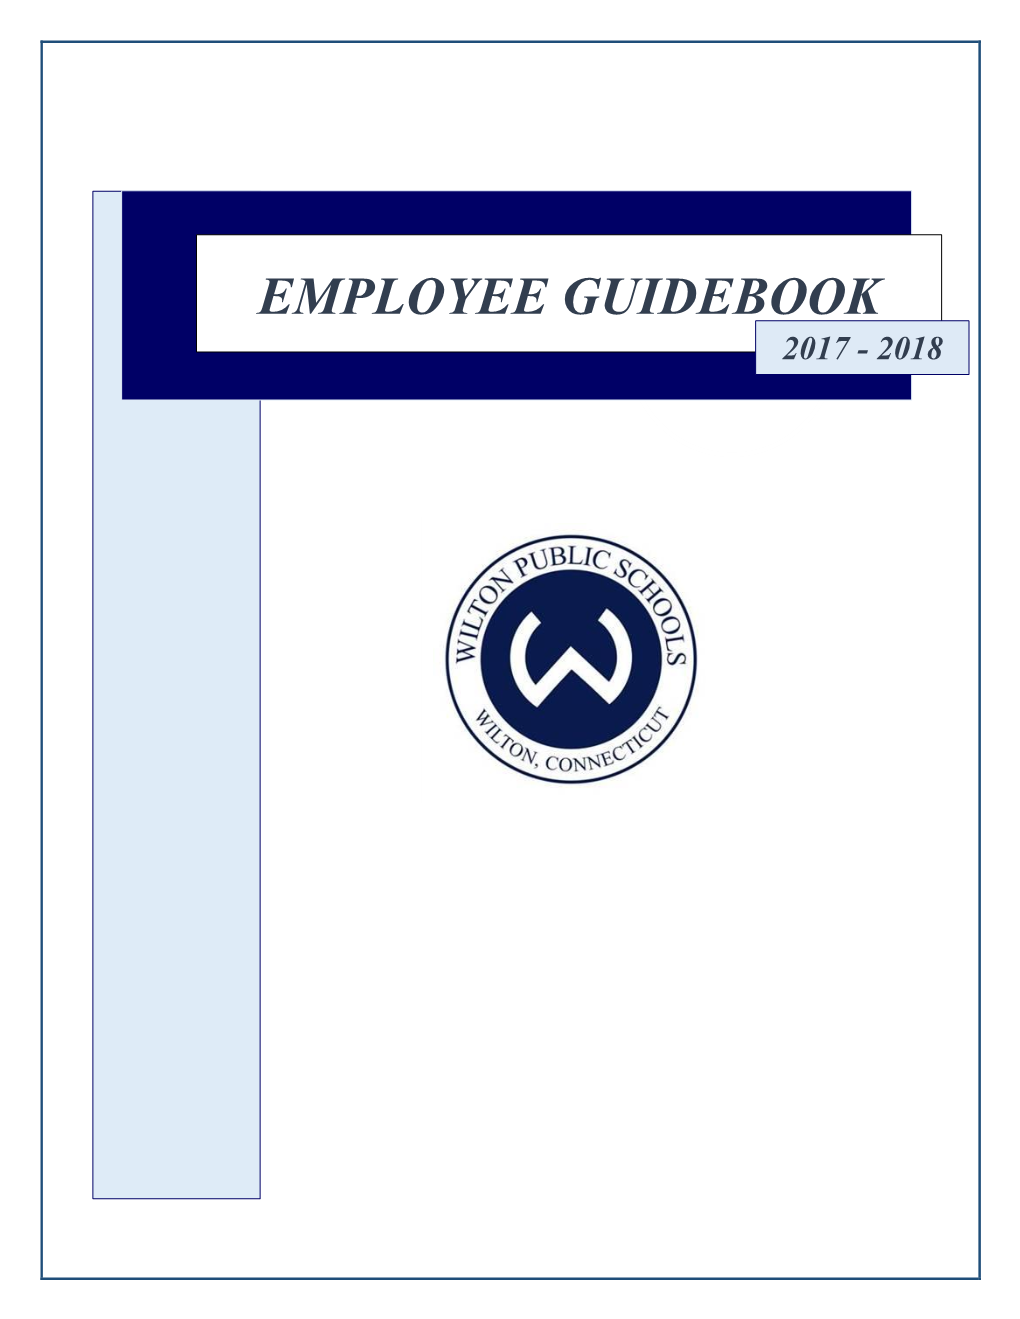 Employee Guidebook 2017 - 2018